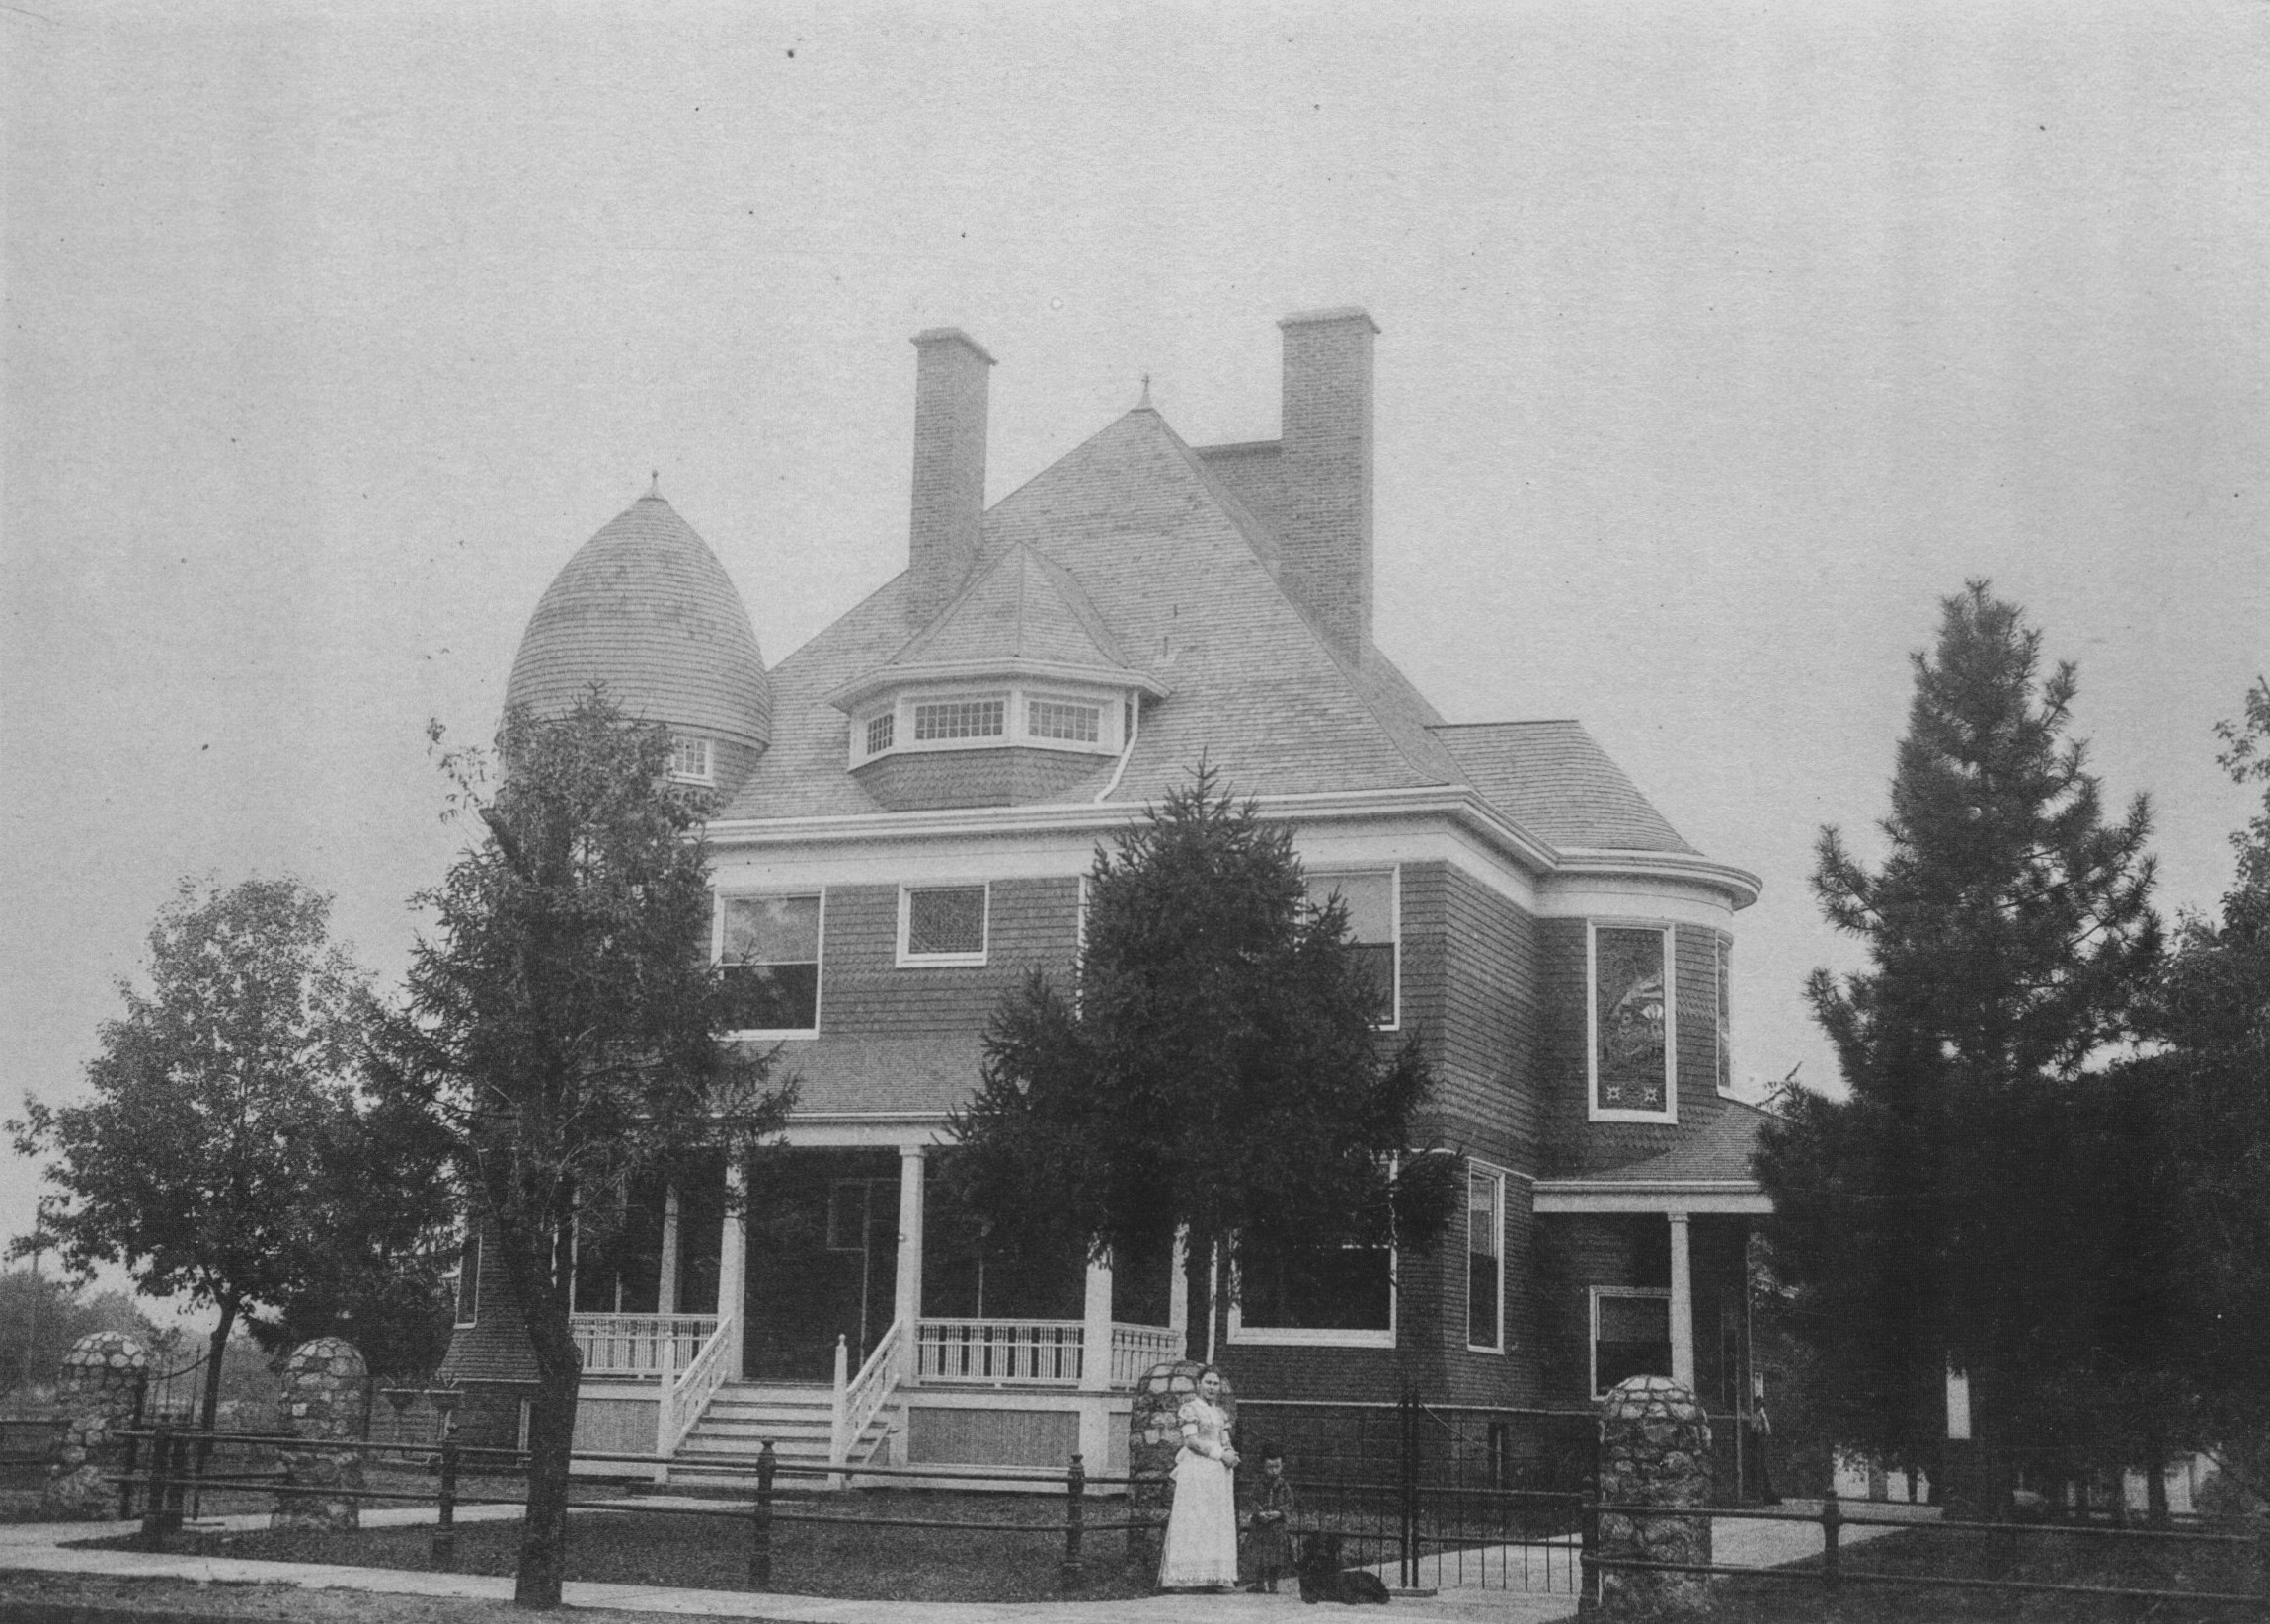 E.W. Wilson Home